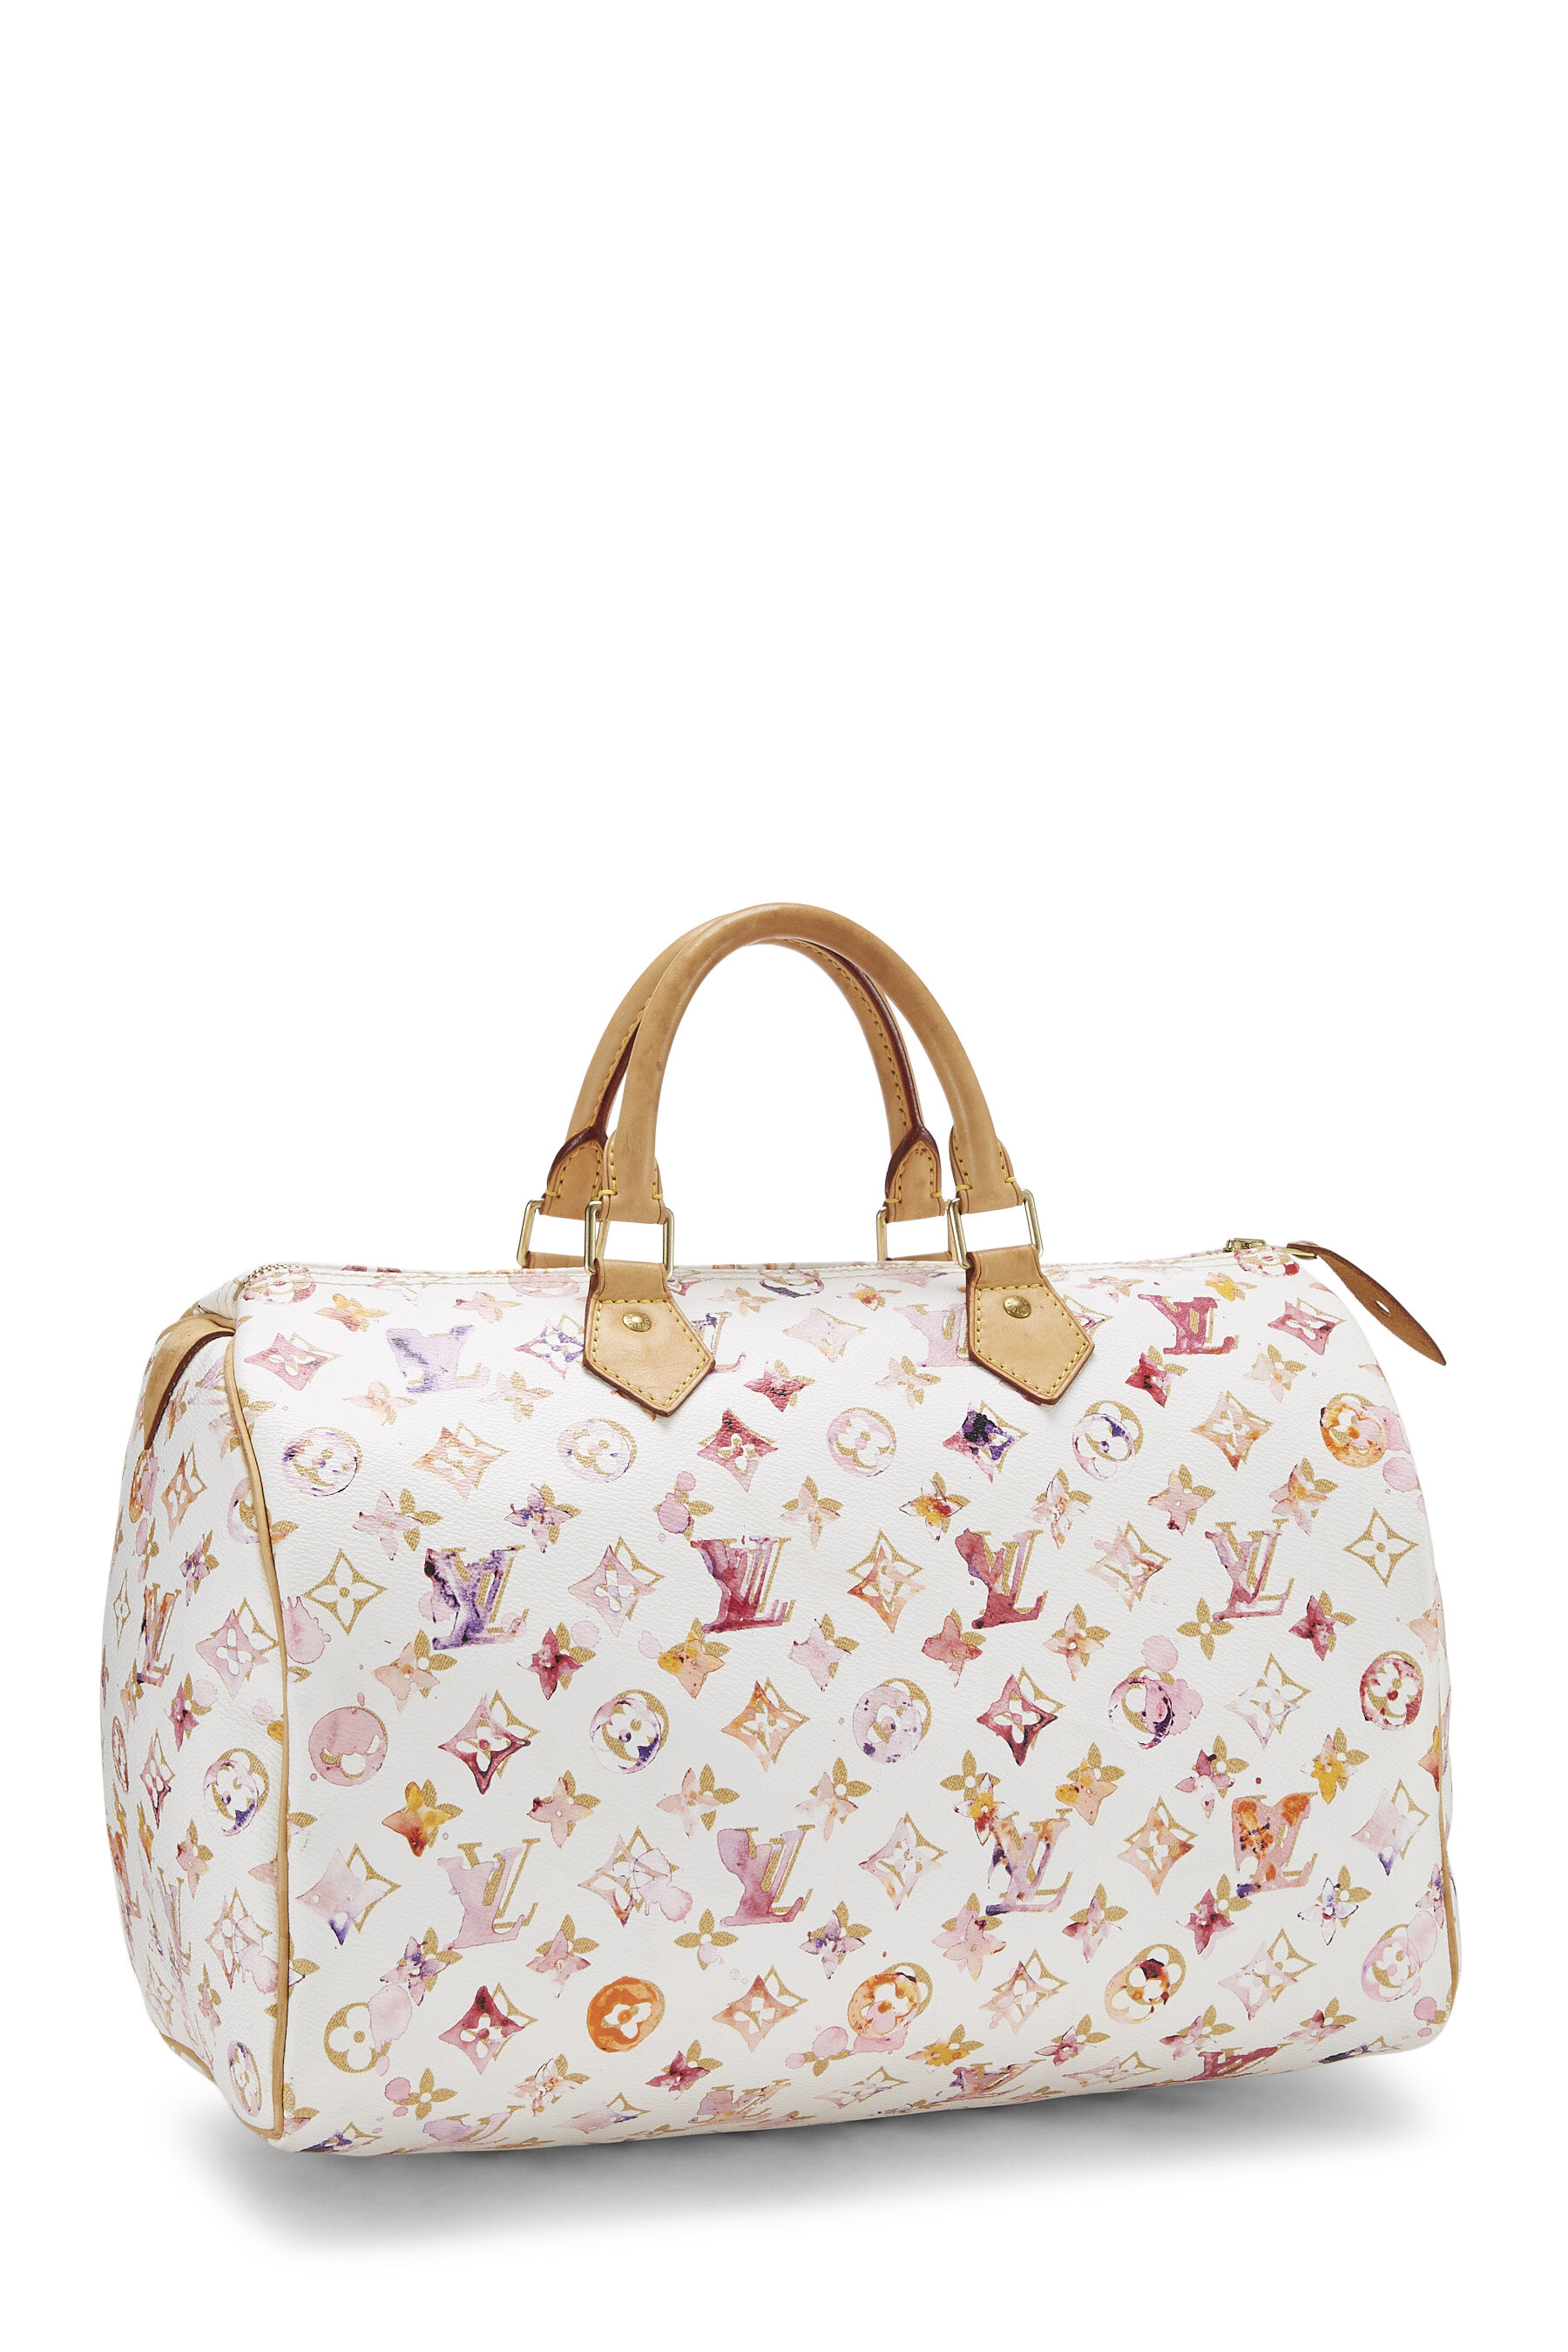 Louis Vuitton, Bags, Louis Vuitton Richard Prince Watercolor Bonbon  Shoulder Bag